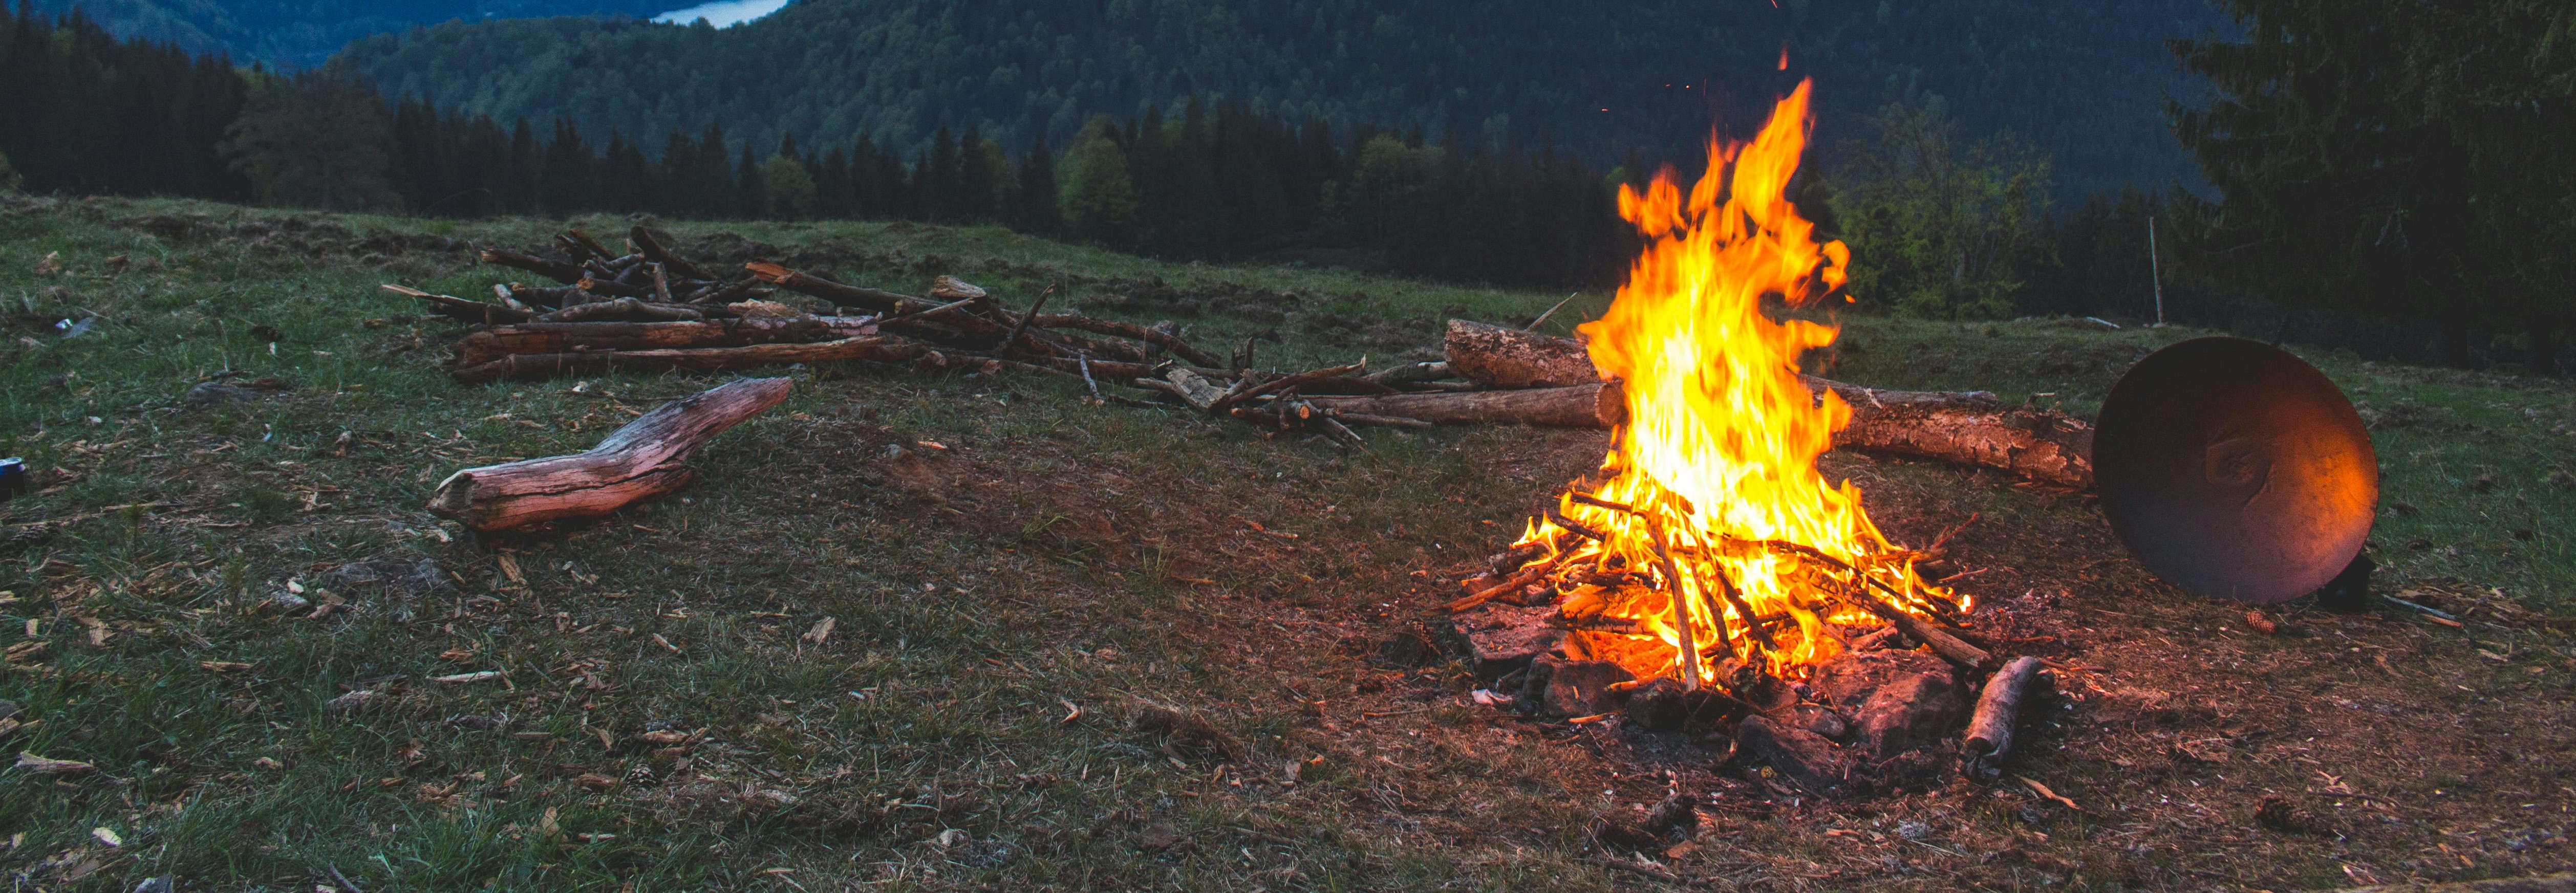 Open Burning Campfire RDN